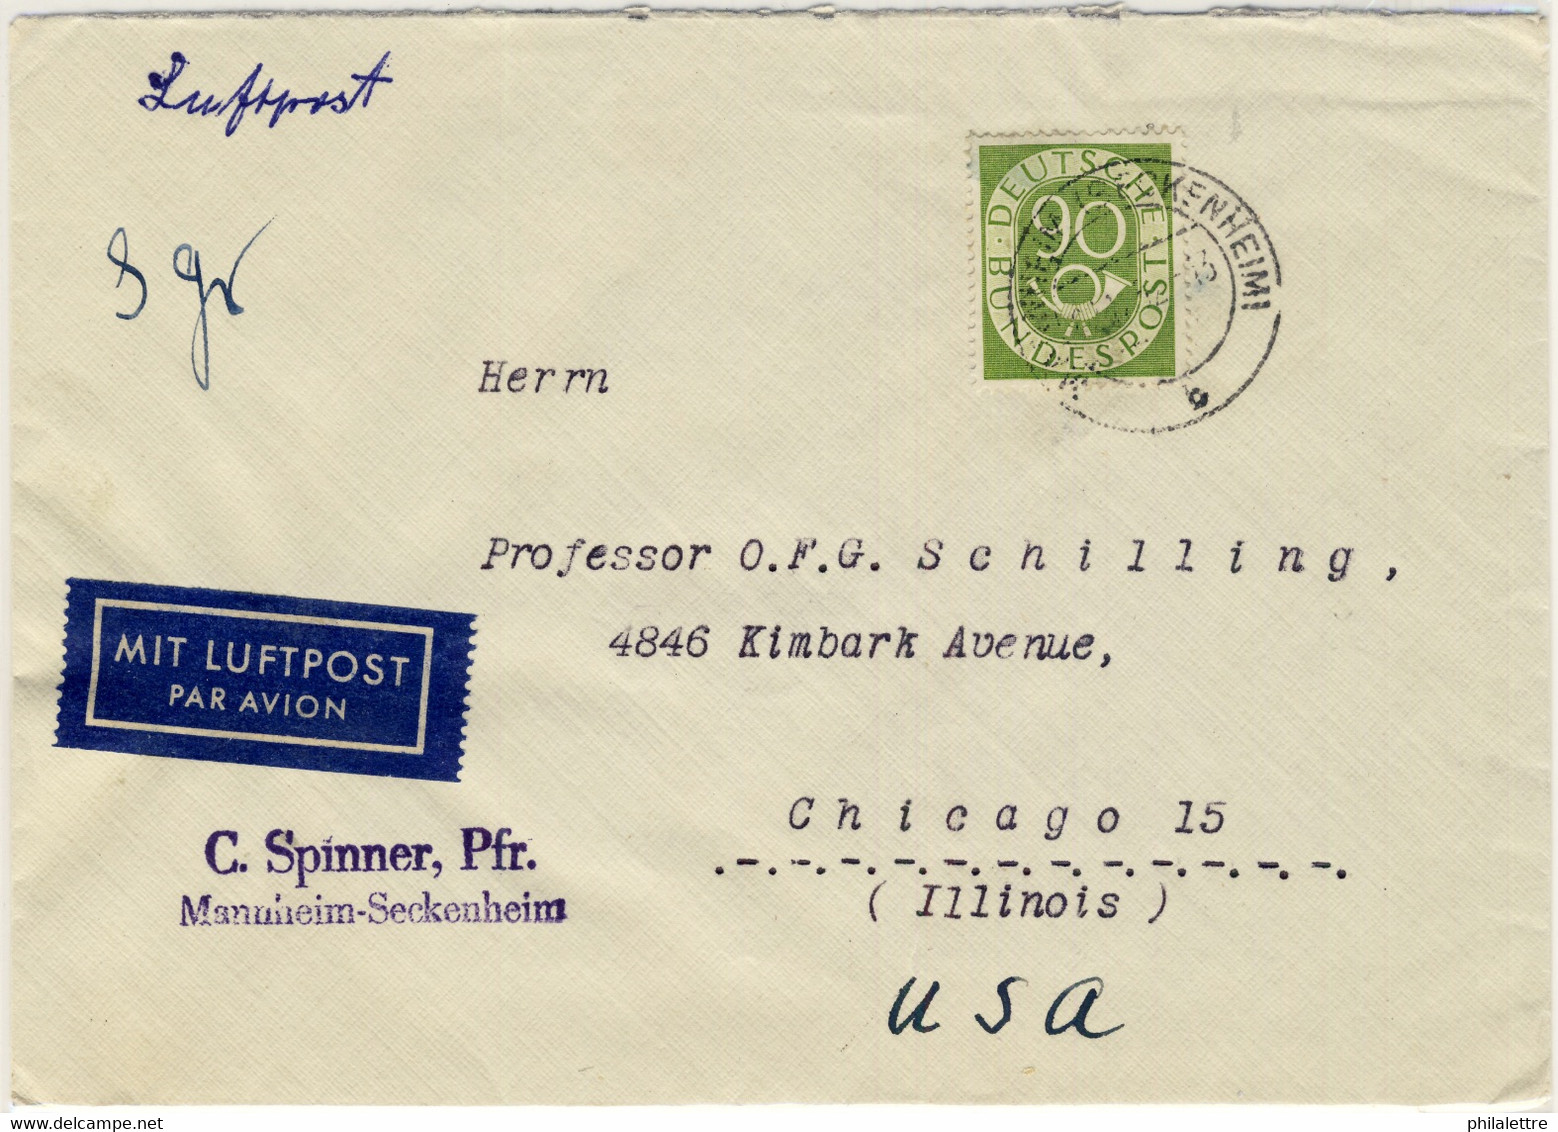 ALLEMAGNE / DEUTSCHLAND - 1952 Posthorn 90pf Einzelfrankatur Mi.138 Auf Luftbrief Aus Mannheim Nach USA - Selten - Briefe U. Dokumente